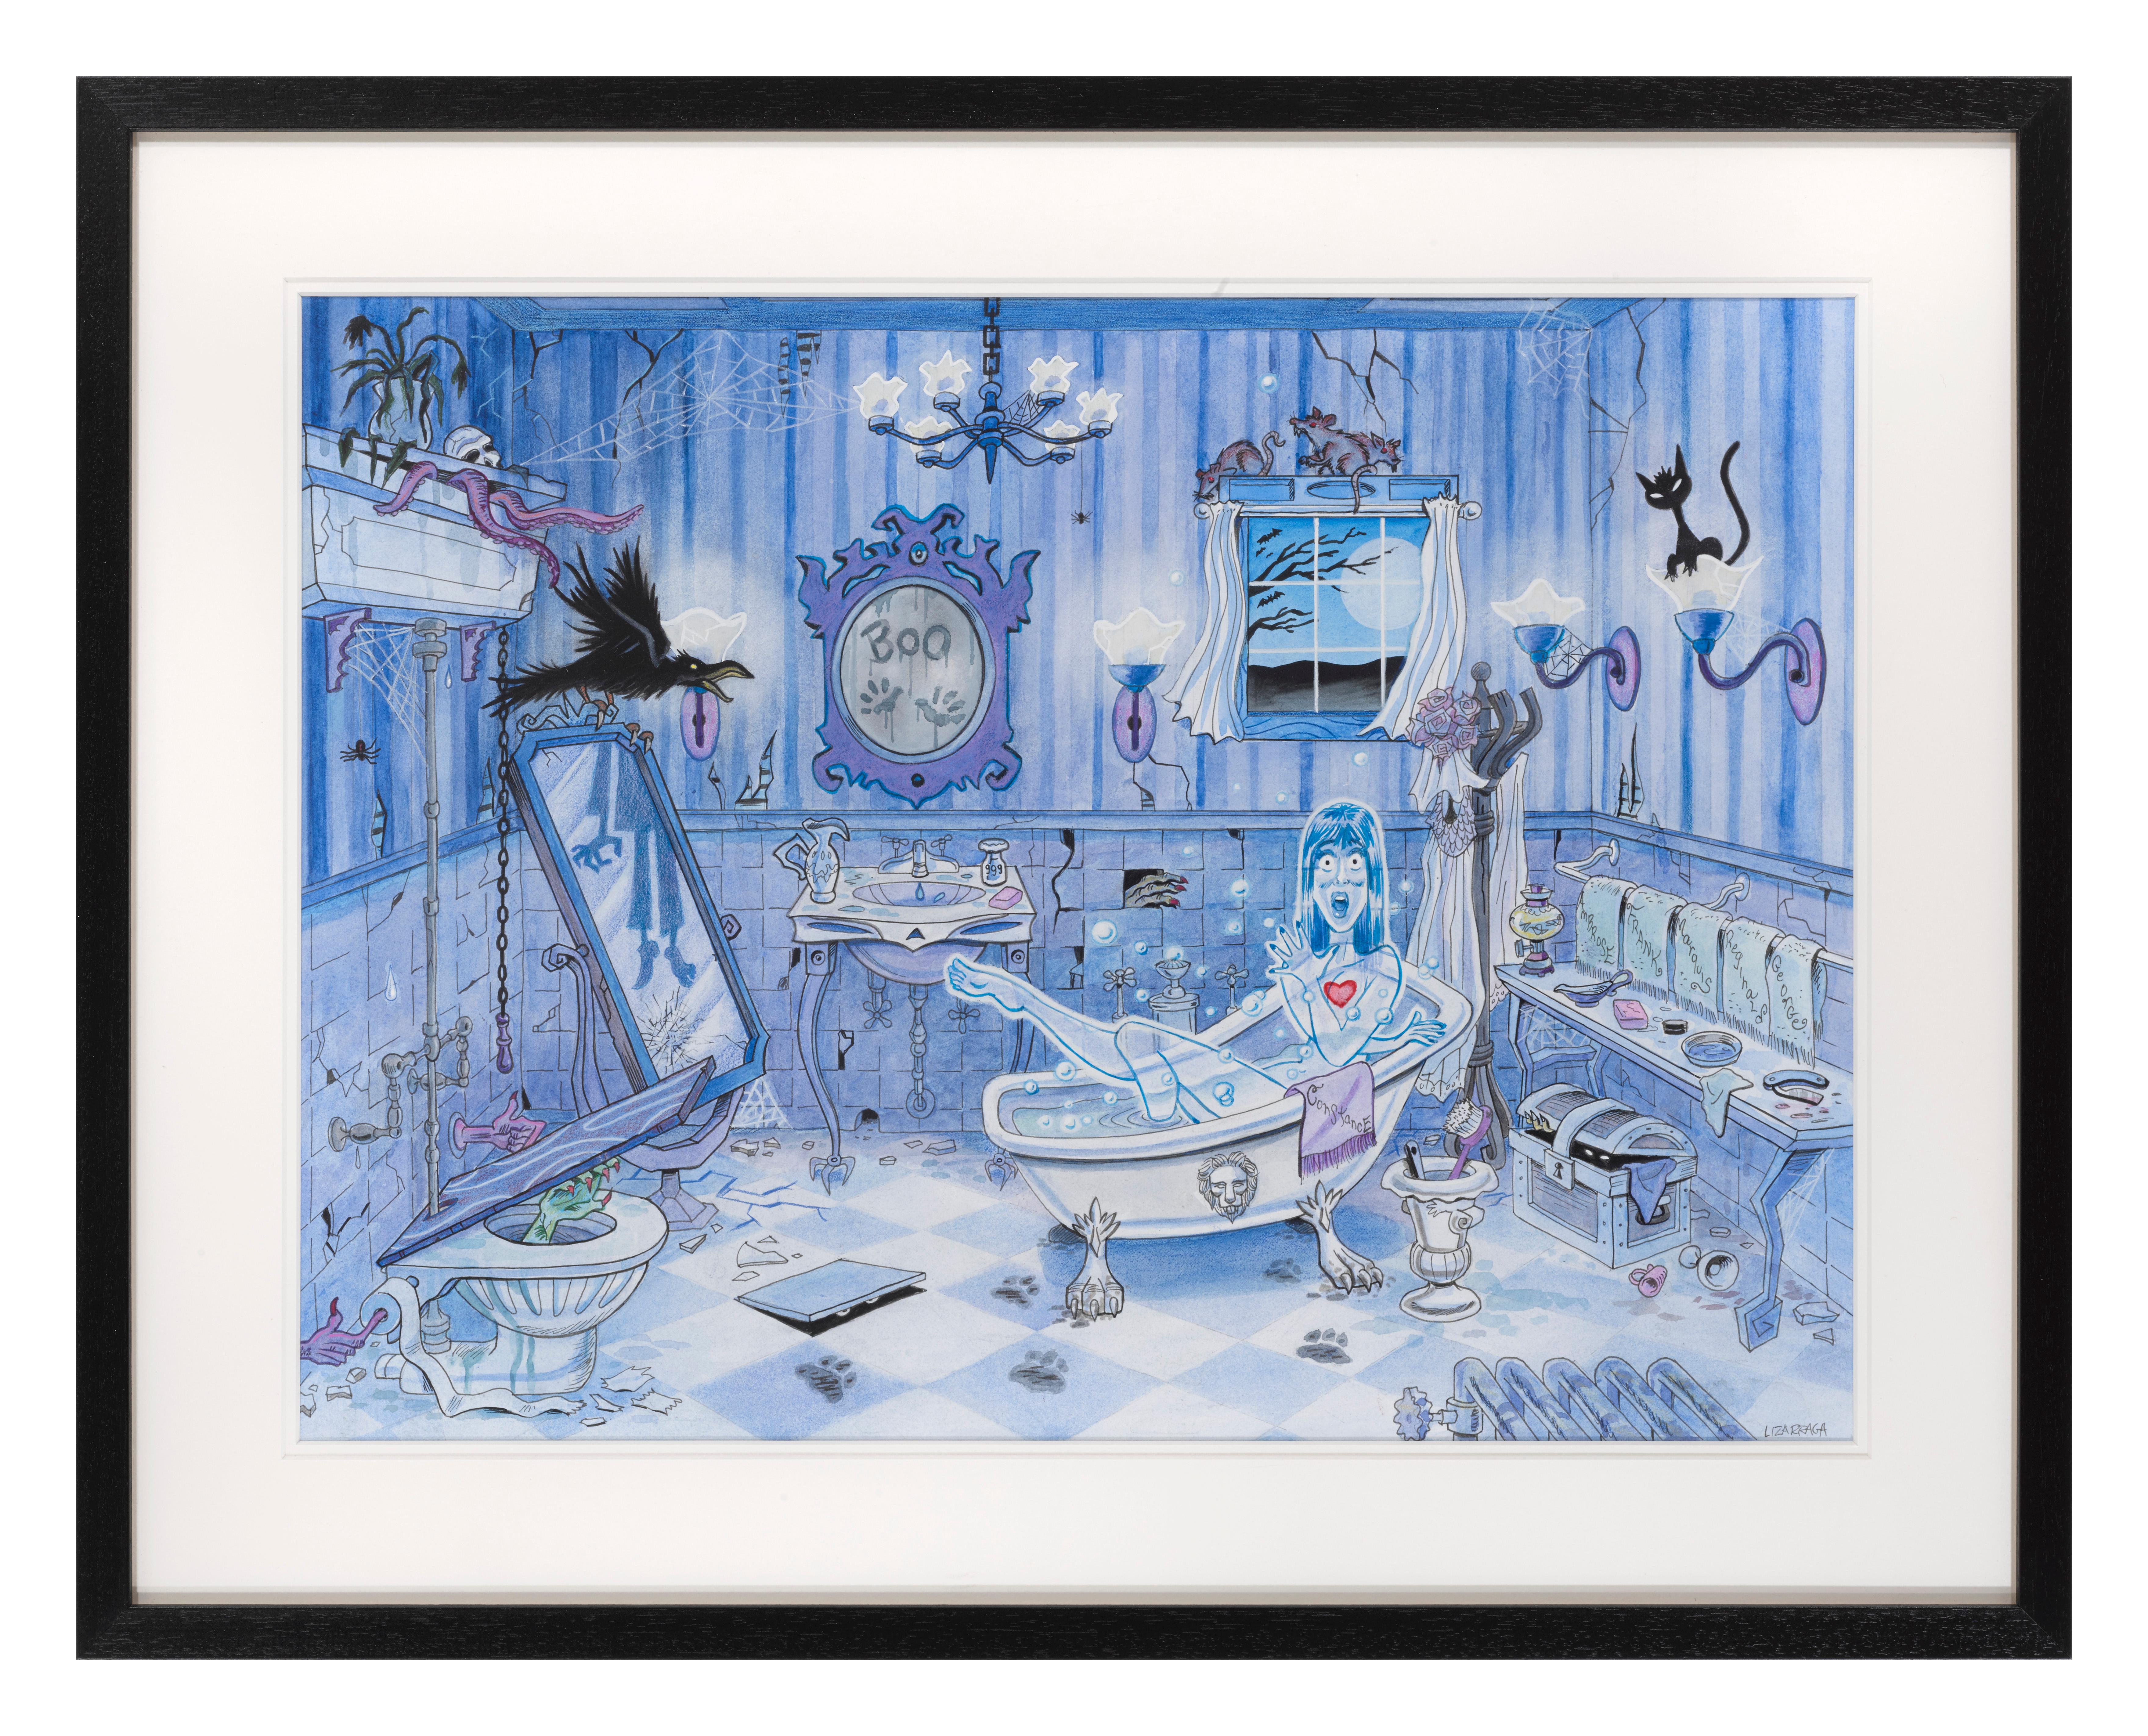 Originalkunstwerk Acryl und Tinte auf Kunstkarton für The Haunted Mansion Bathroom
Dieses Kunstwerk wurde für einen Druck verwendet, der im Disney-Themenpark verkauft wurde. Die angegebene Größe ist vor der Rahmung.
Dieses Kunstwerk ist